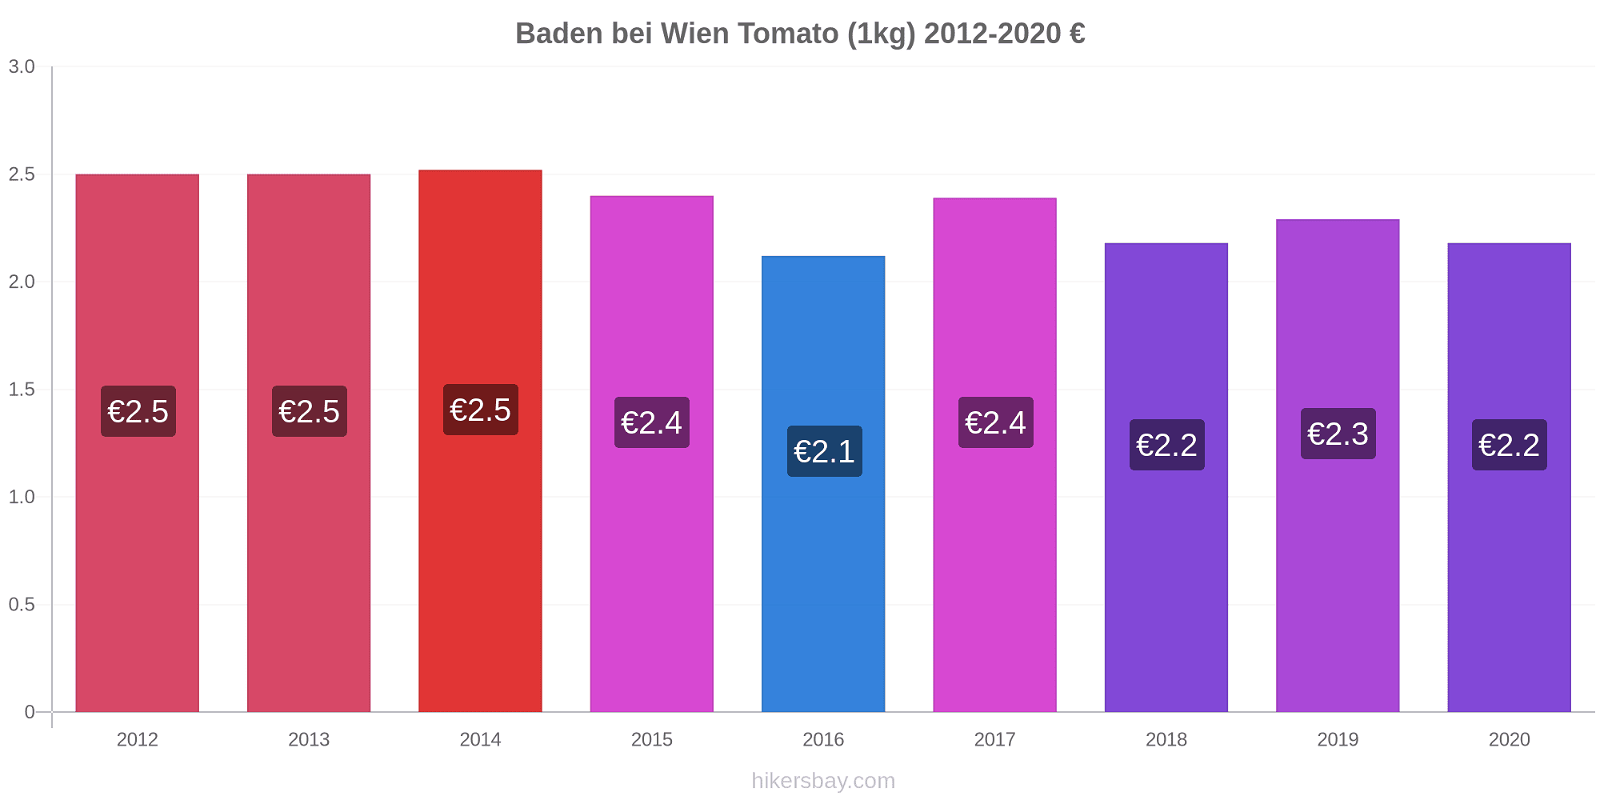 Baden bei Wien price changes Tomato (1kg) hikersbay.com